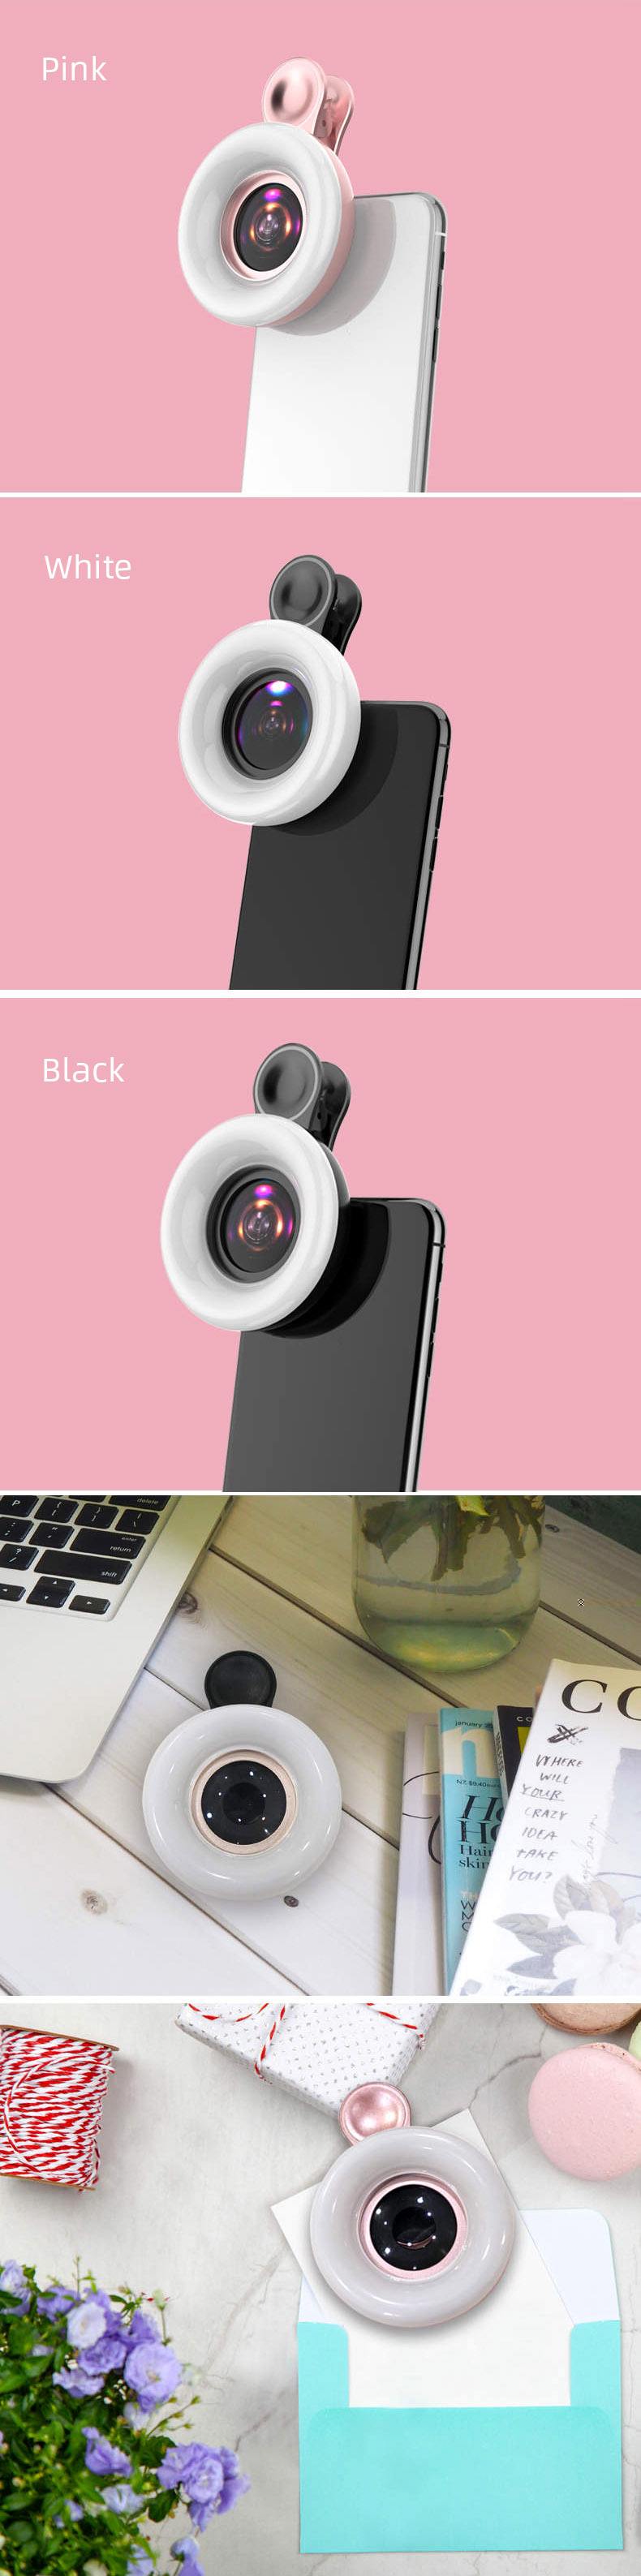 New Arrival Fill Light Macro Lens Mobile Phone Camera Lens Kit